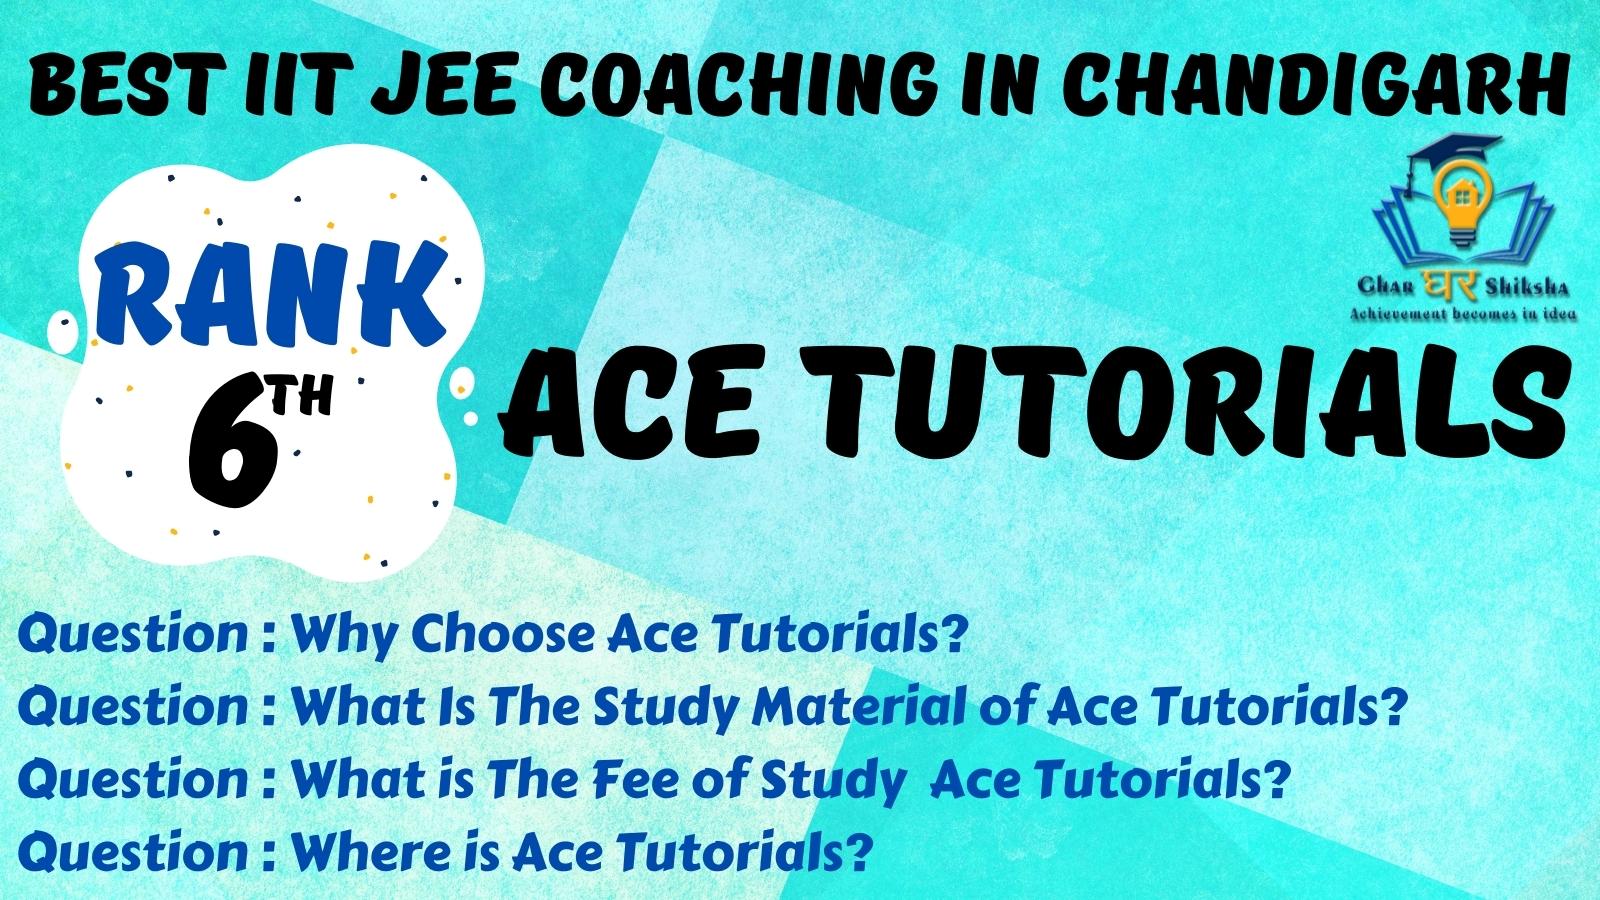 Ace Tutorials | Best IIT JEE Coaching In Chandigarh